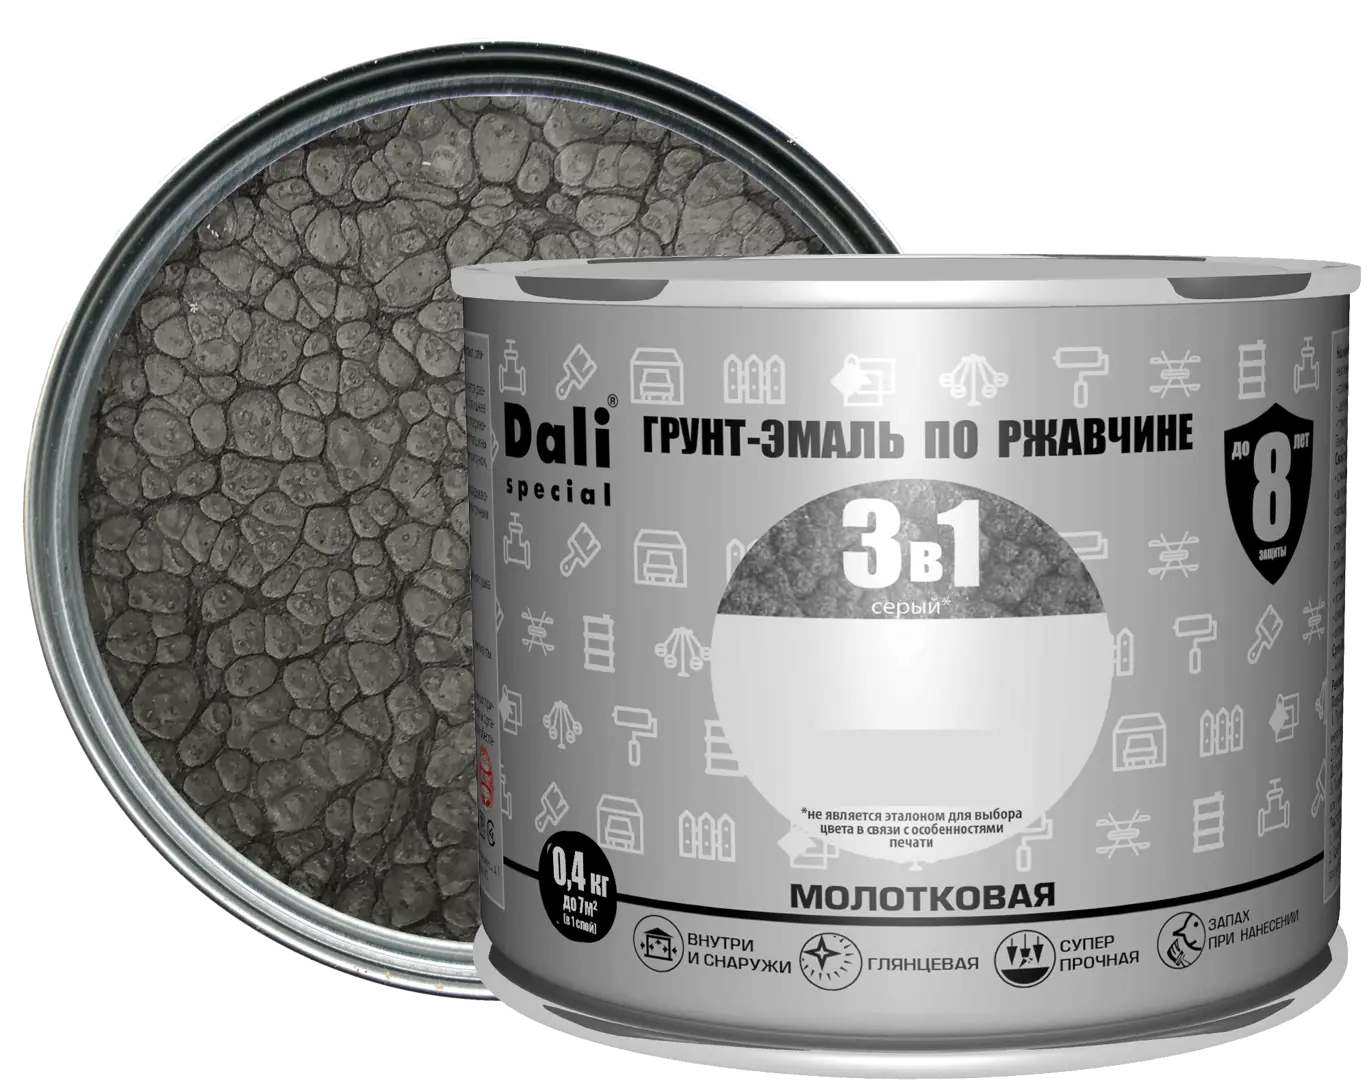 Грунт-эмаль по ржавчине 3 в 1 Dali Special молотковая цвет серый 0.4 кг